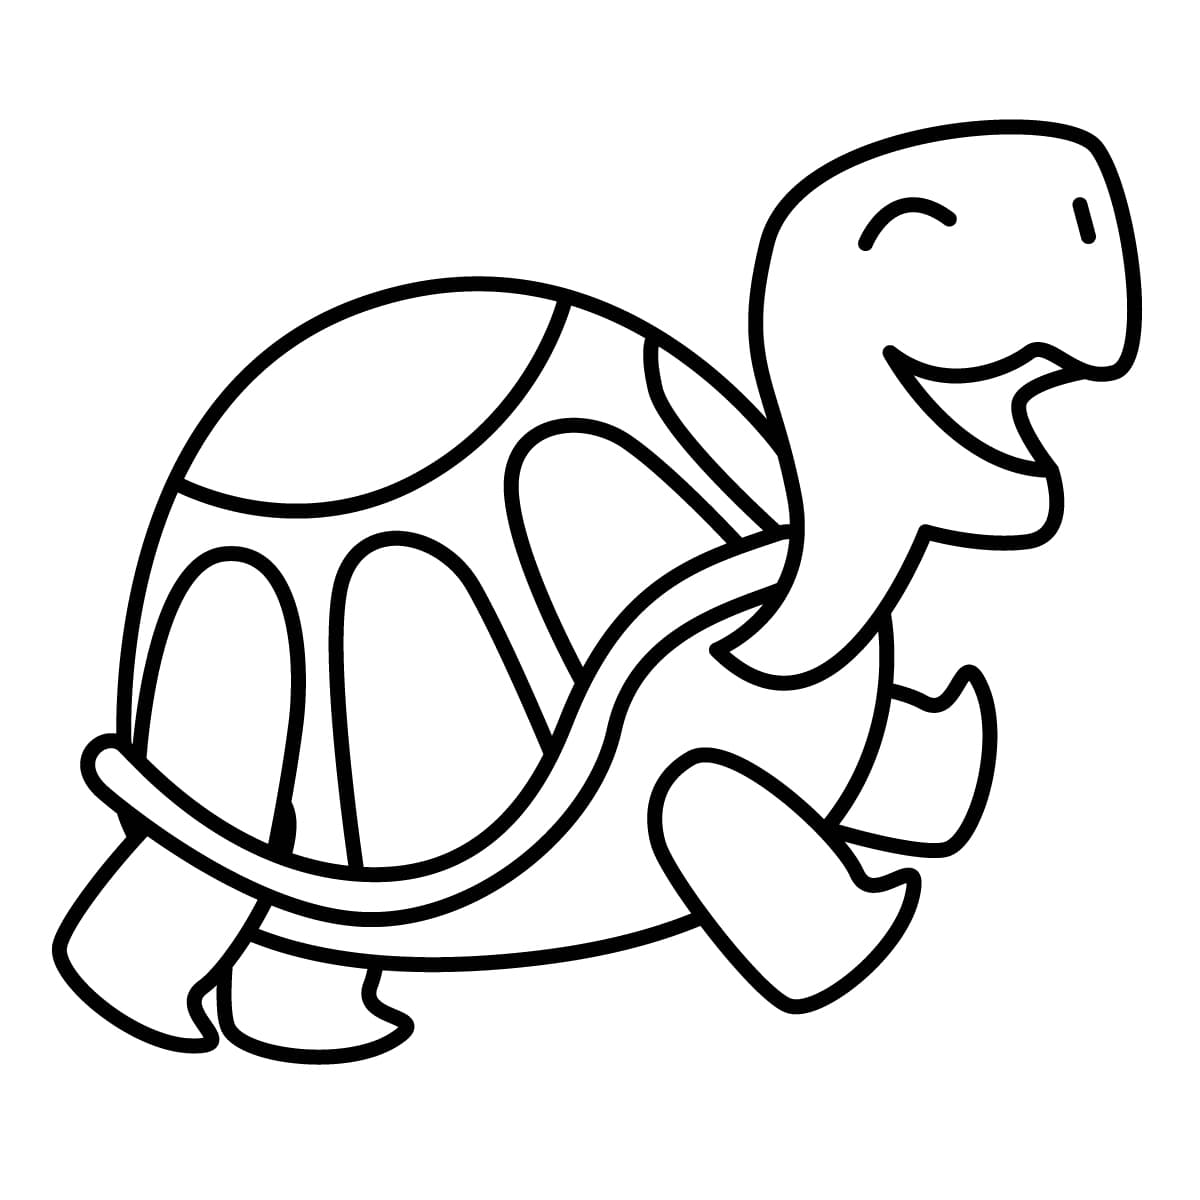 Dibujo de tortuga para colorear e imprimir - Dibujos y colores